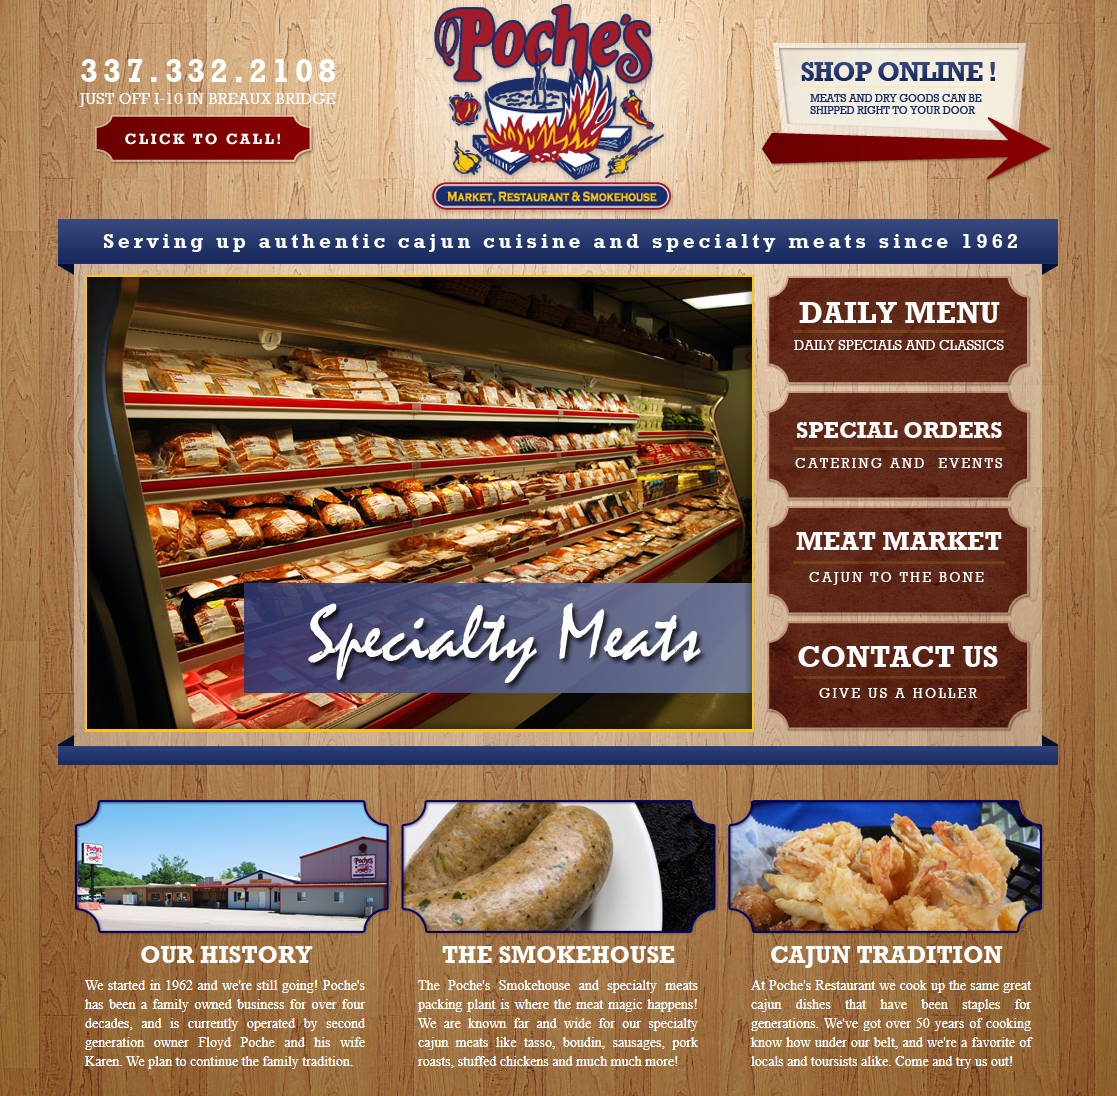 Poches restaurant web design screenshot for a company in Lafayette LA